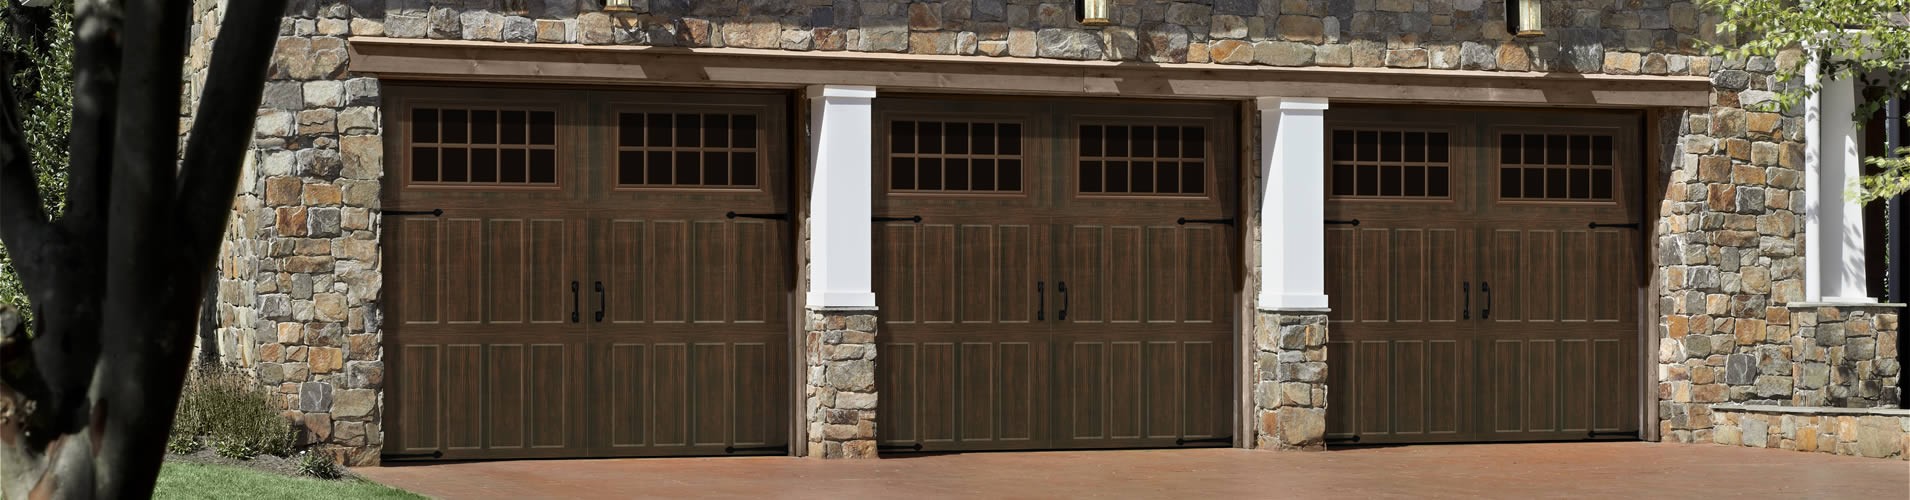 Wood Garage Doors Brentwood, TN